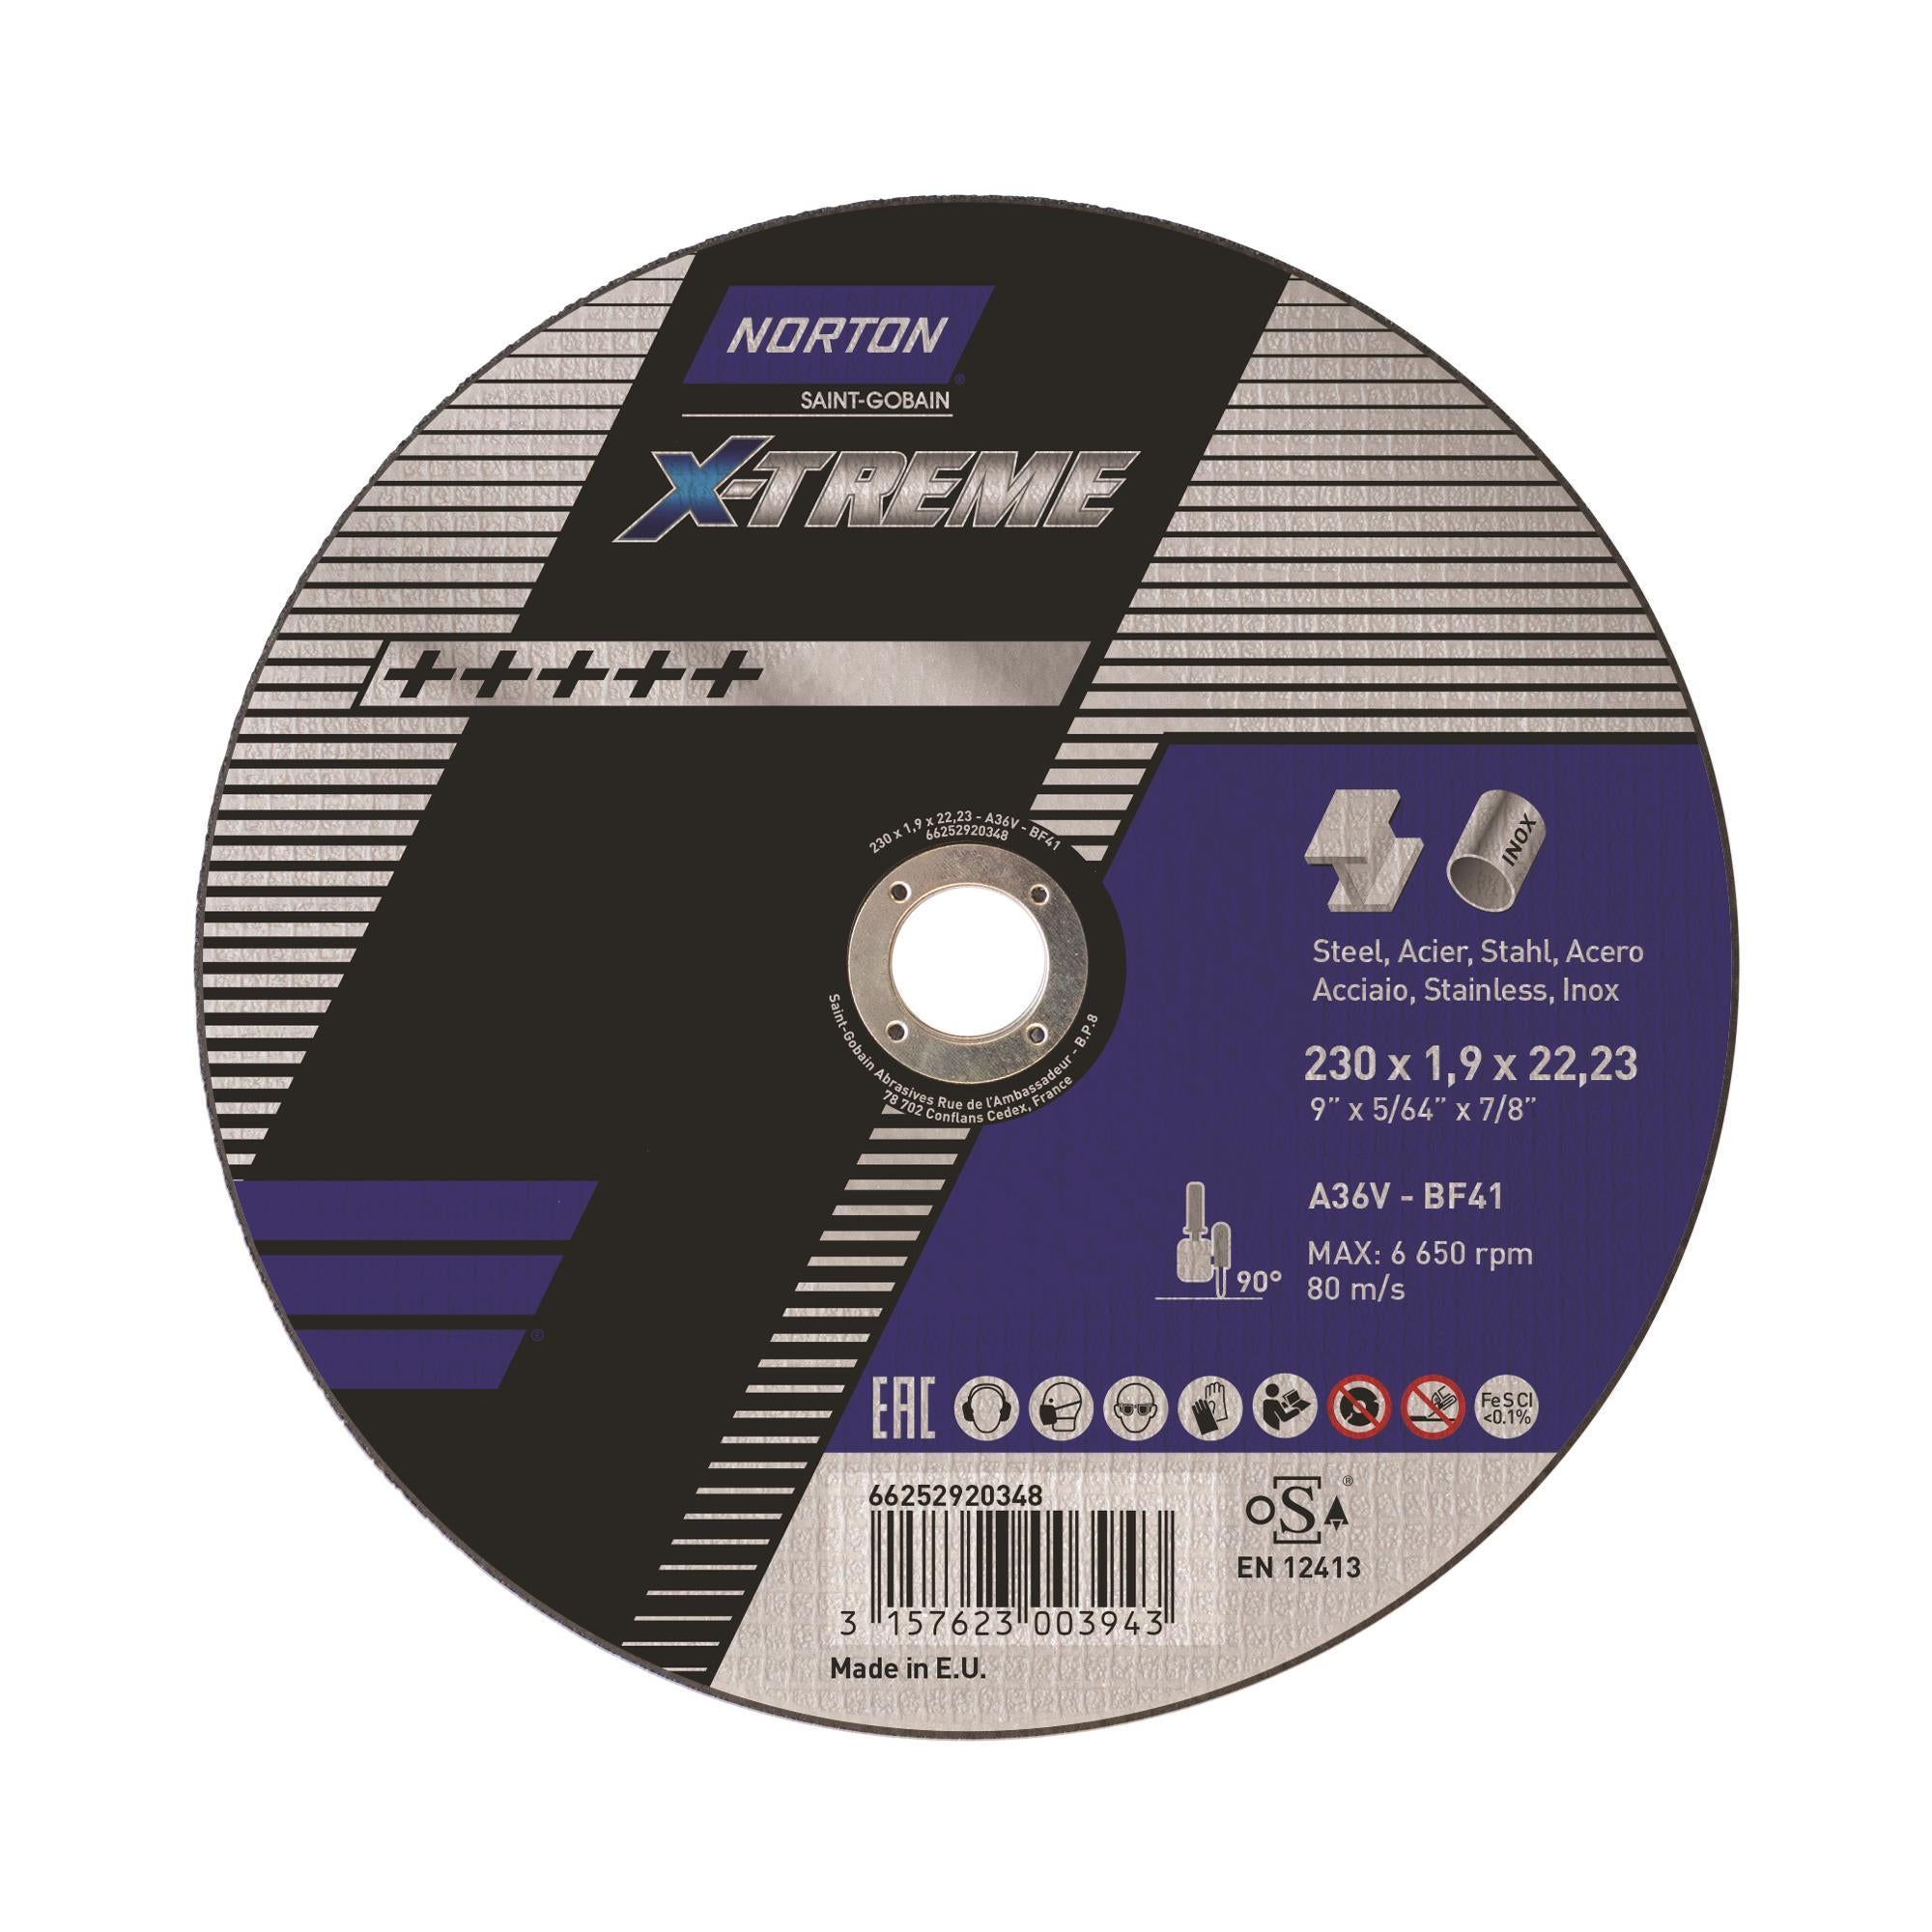 Δίσκος κοπής για inox-σιδηρου  25τεμ. Ίσιος X-TREME No230x1,9x22,3mm 66252920348